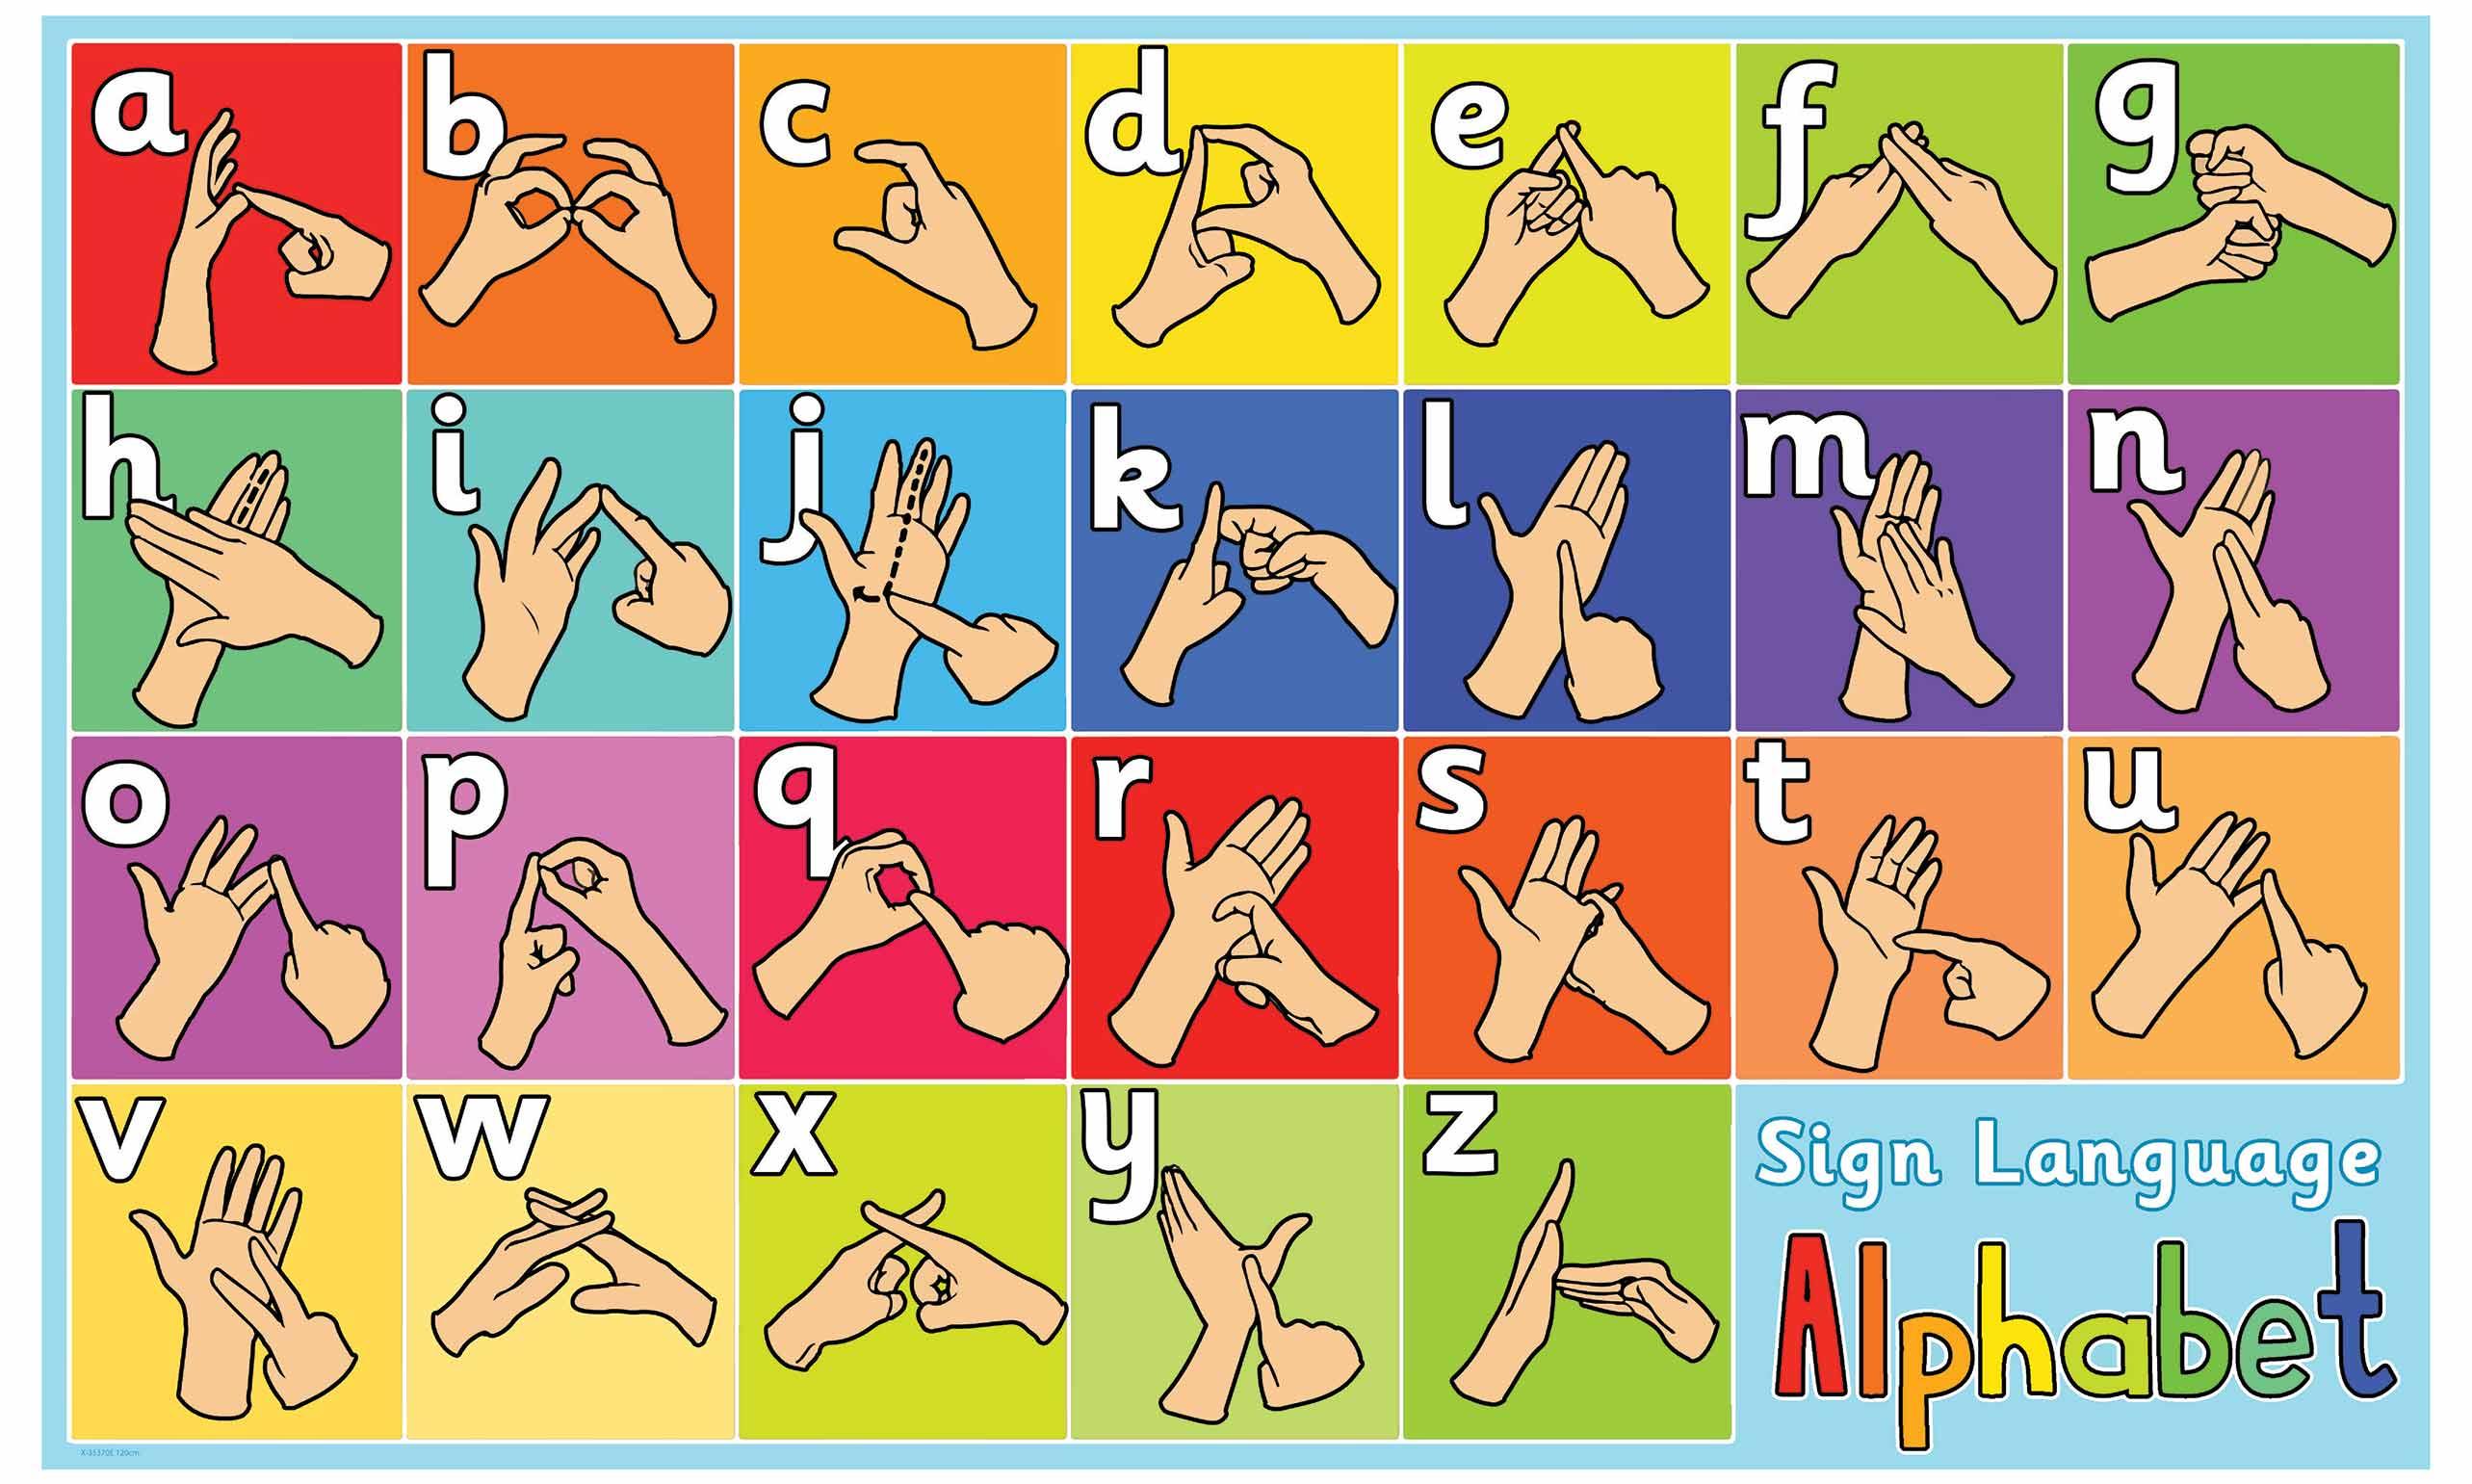 3-worksheet-alphabet-sign-language-printable-free-sign-language-alphabet-printable-language